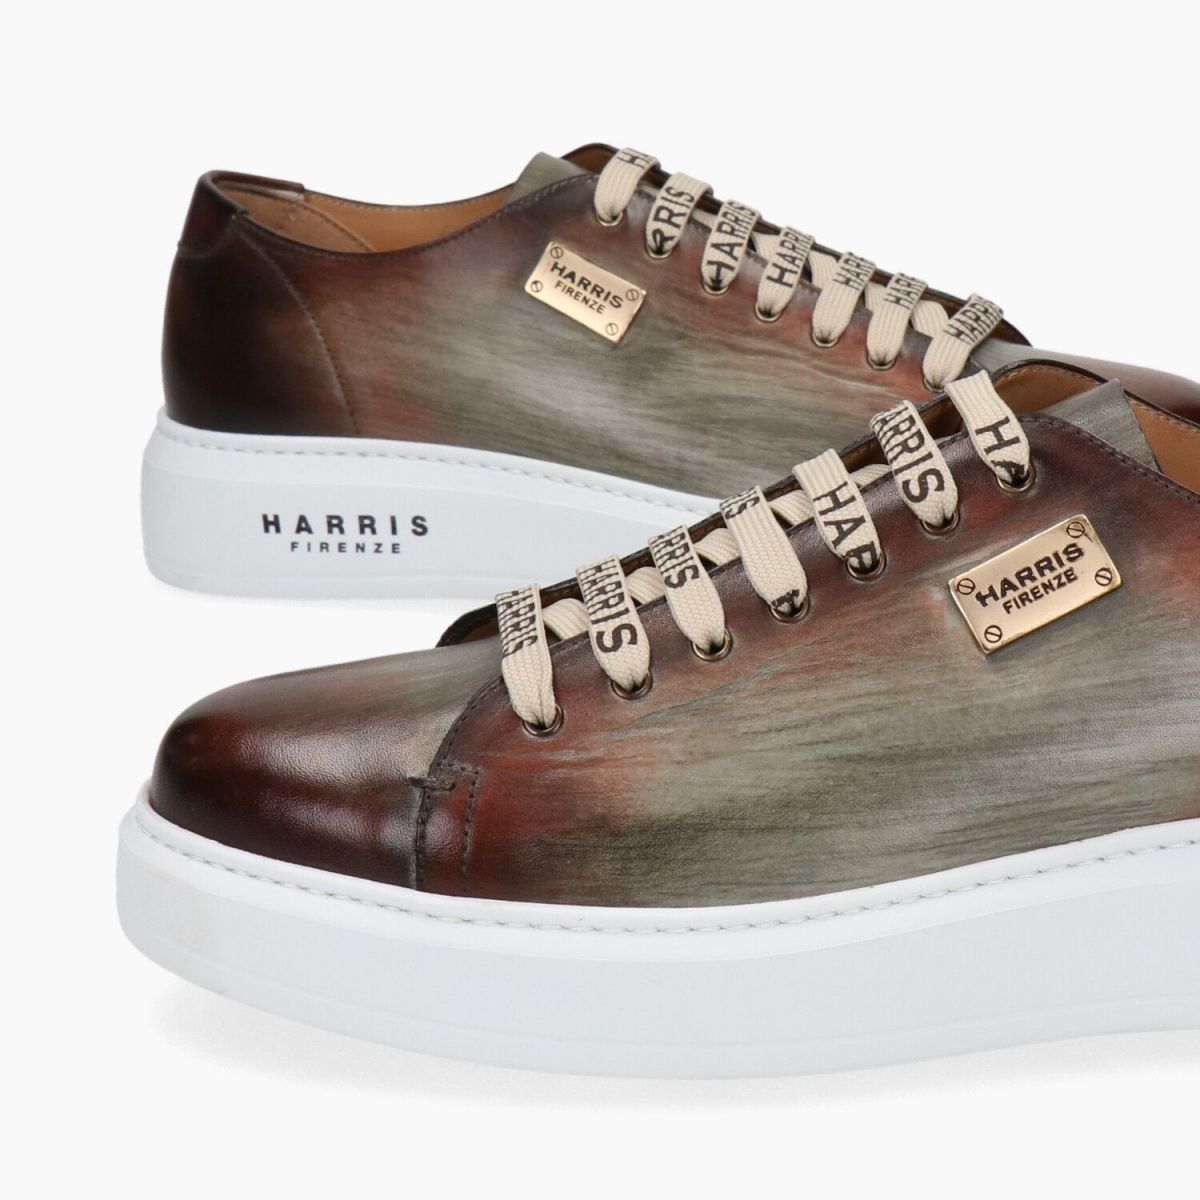 Harris Sneakers Brown PALERMO-MARRONE-022